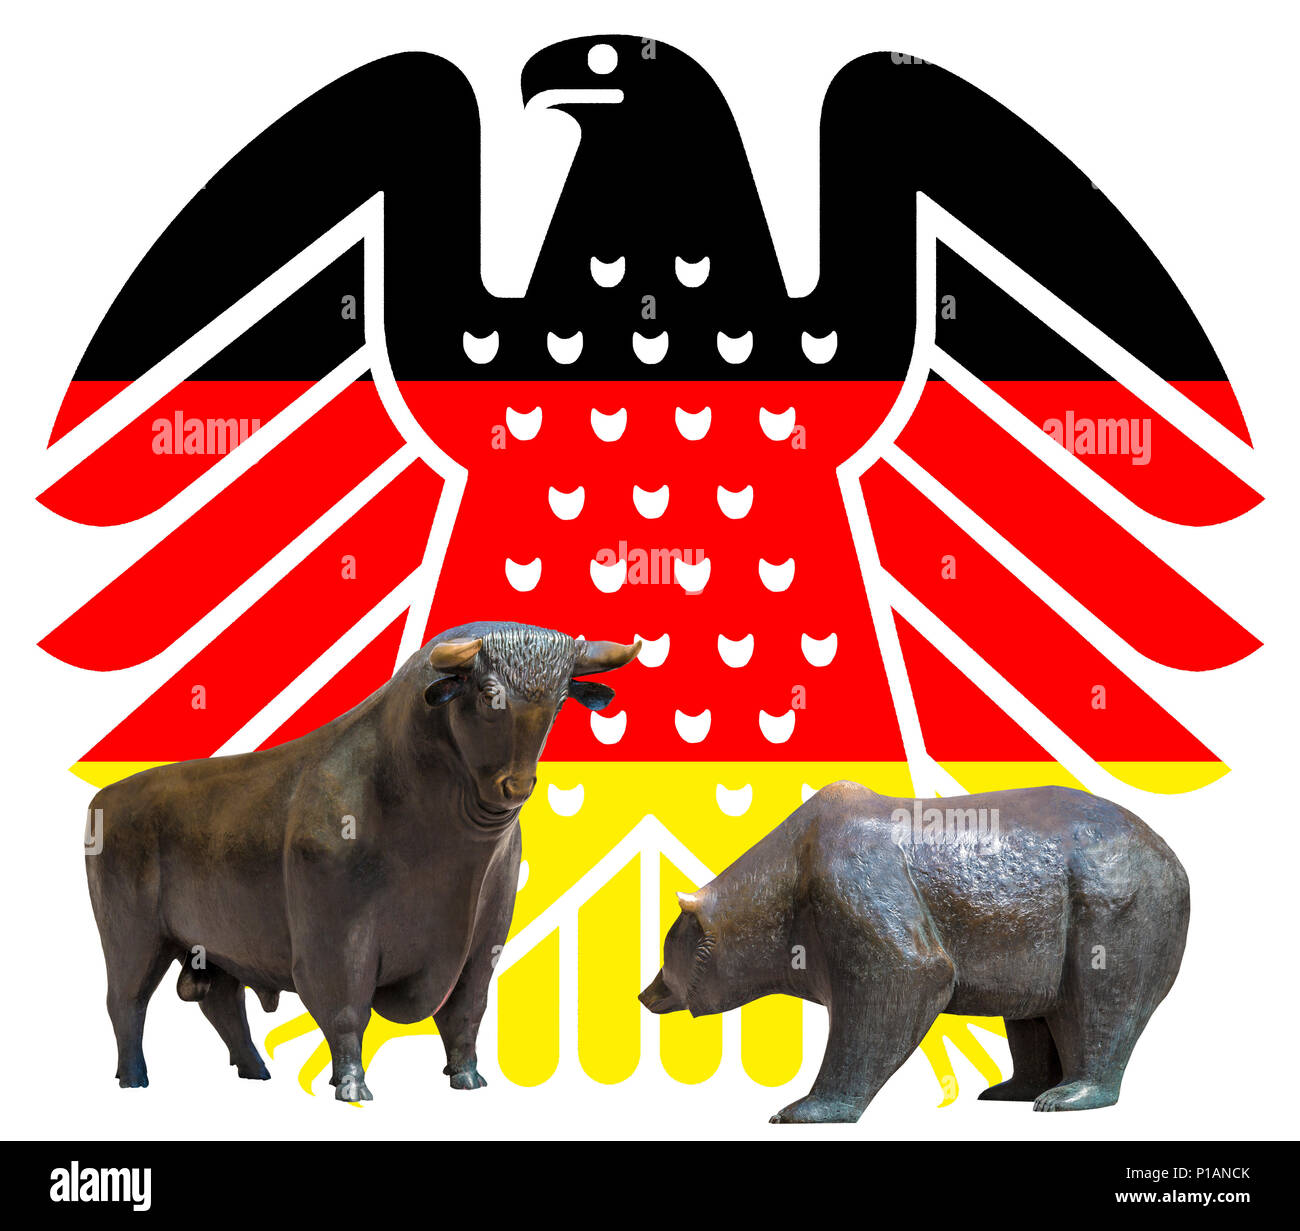 Neue bundesadler in den Farben schwarz - rot - Gold, das Wappentier der Bundesrepublik Deutschland, vor der Börse Bulle und Bär sym Stockfoto